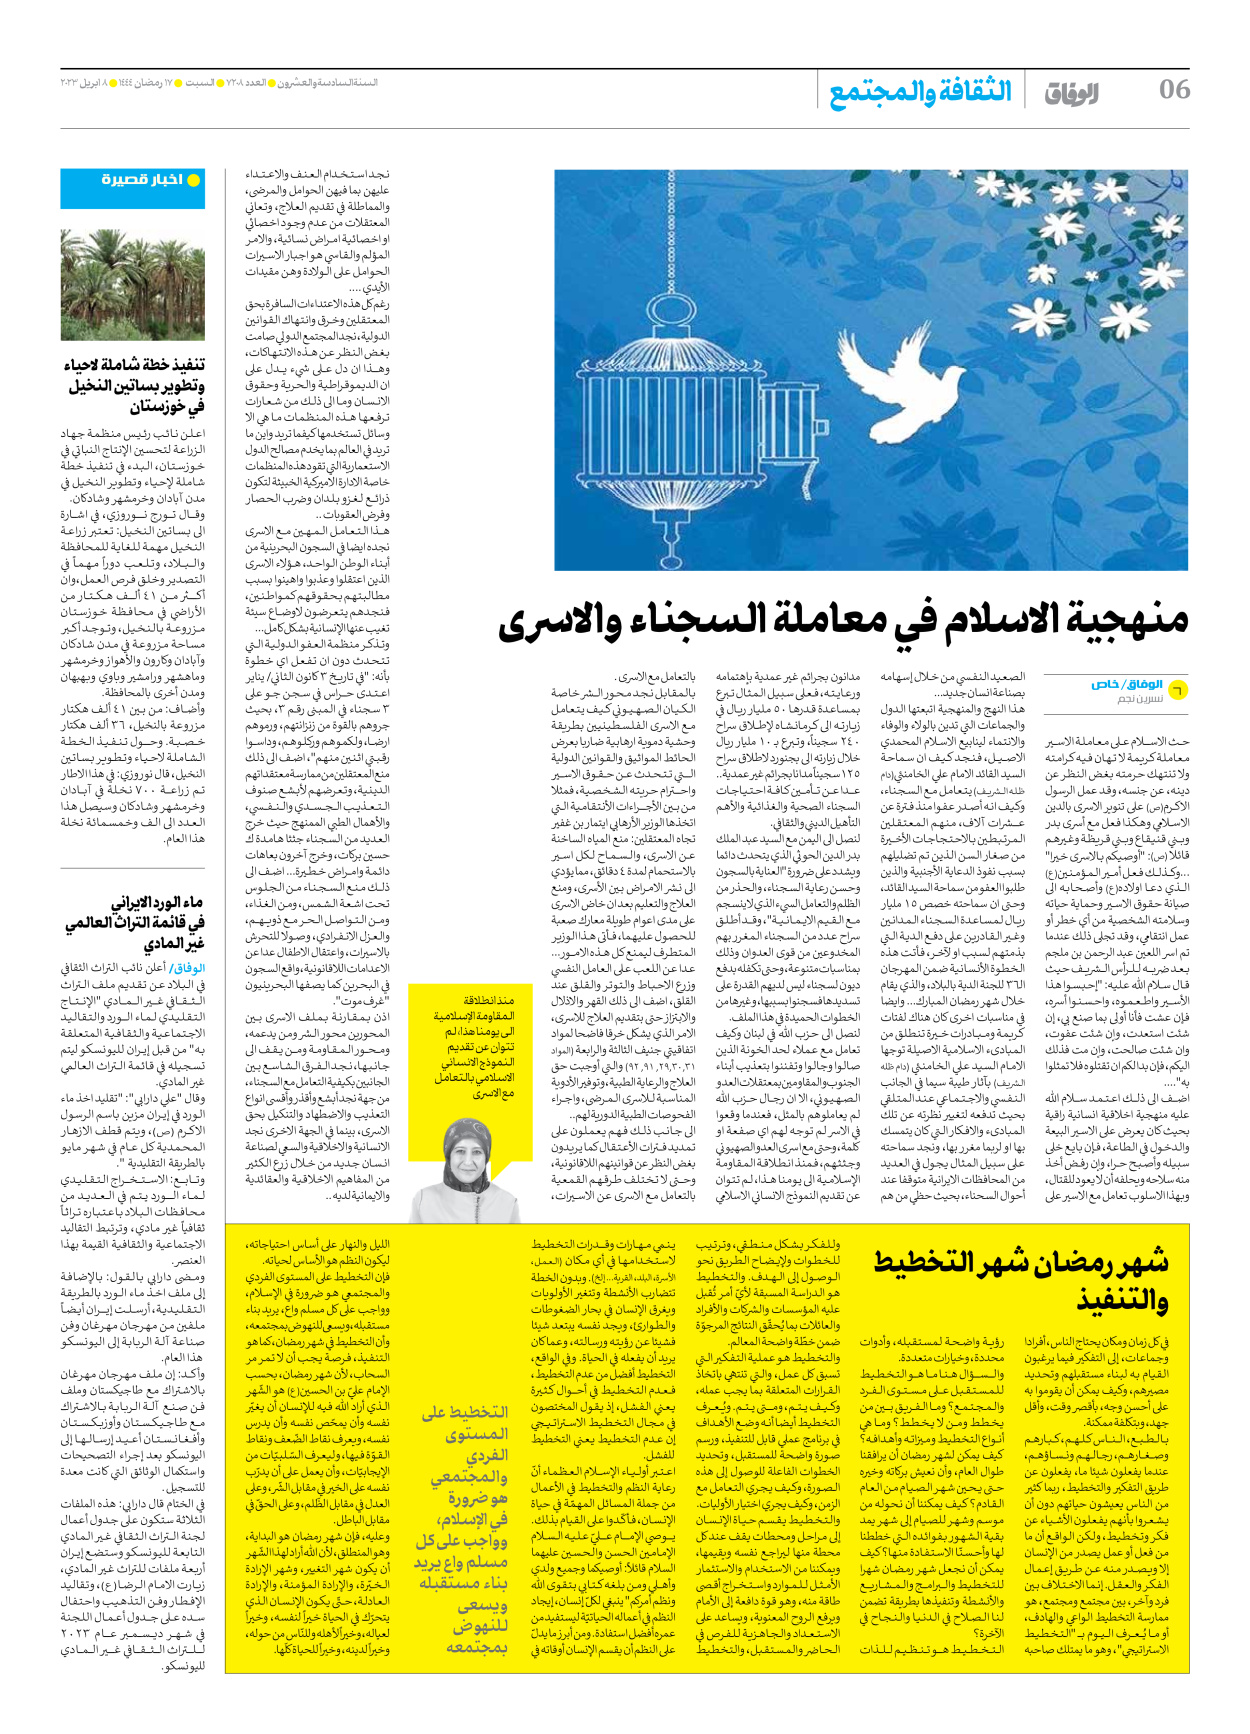 صحیفة ایران الدولیة الوفاق - العدد سبعة آلاف ومائتان وثمانية - ٠٨ أبريل ٢٠٢٣ - الصفحة ٦